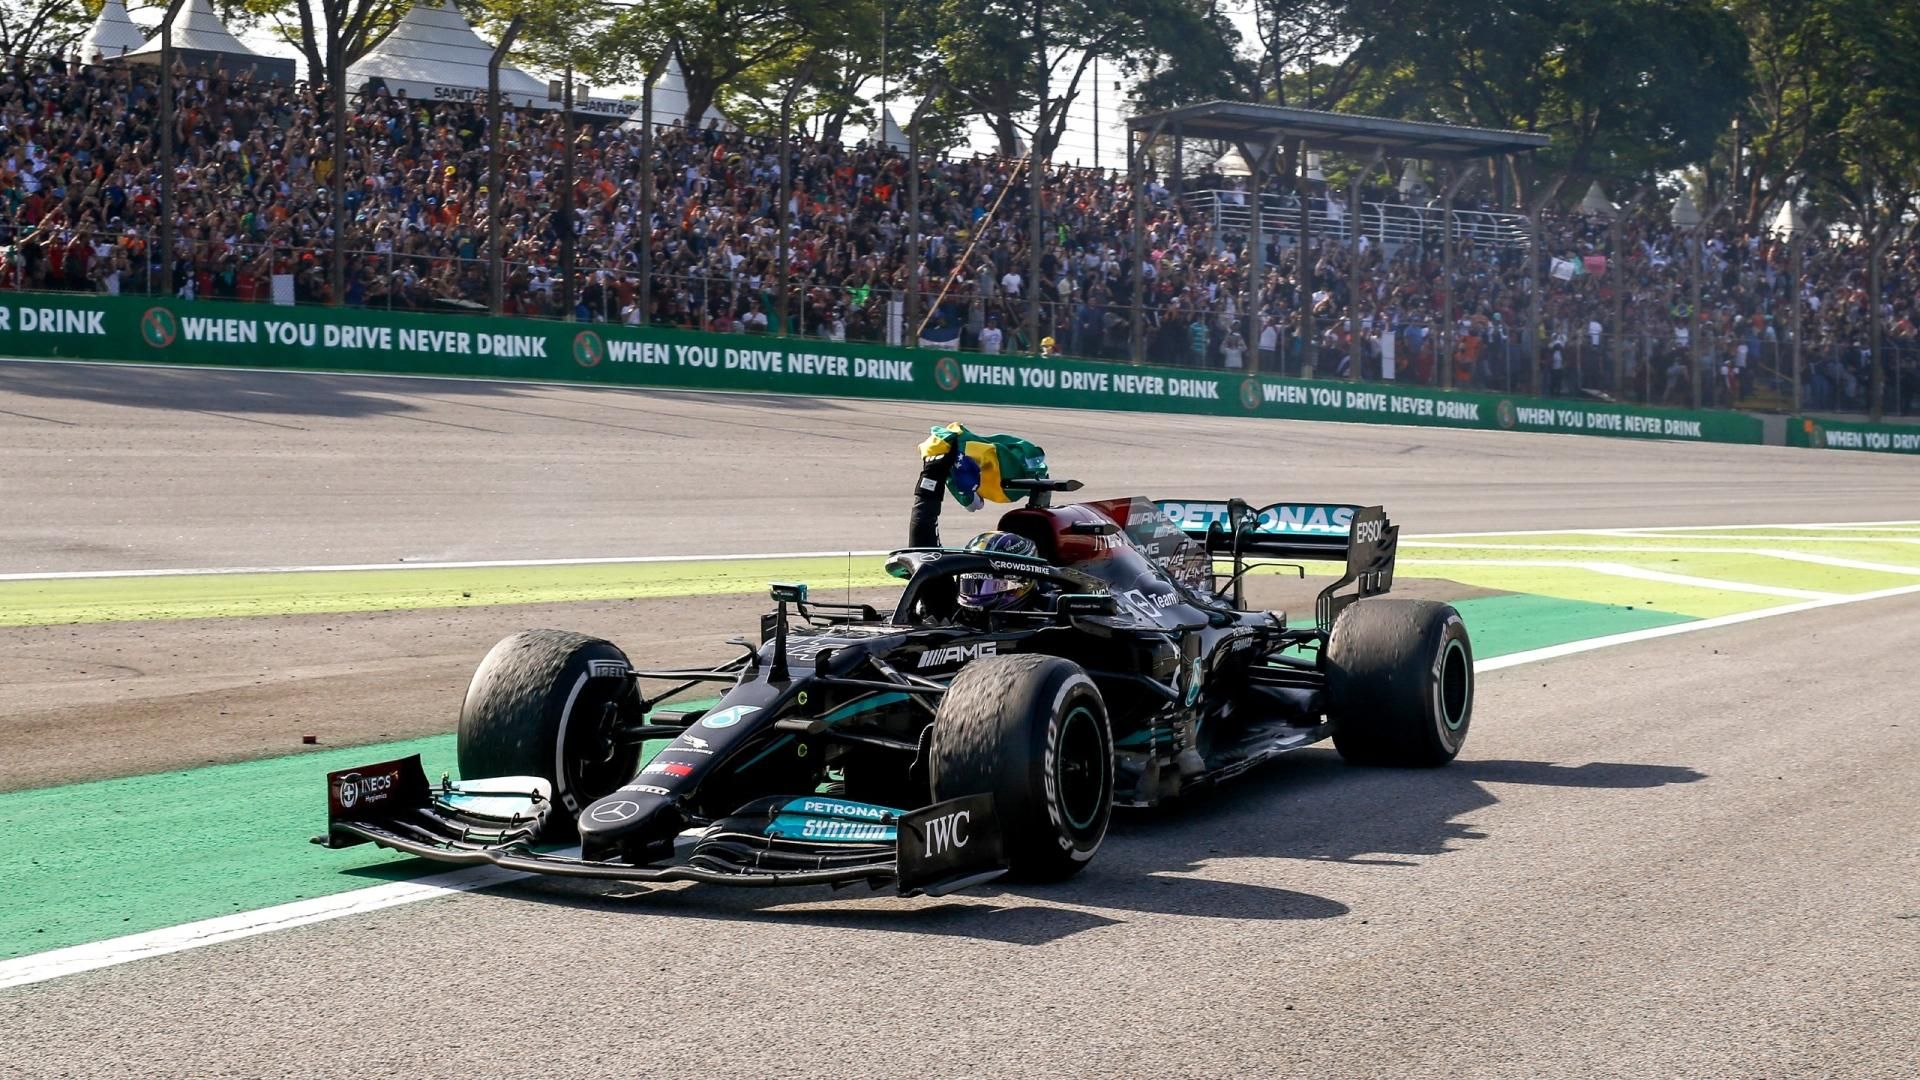 Vídeo: F1 apresenta nova câmera dinâmica no carro de Hamilton durante treino  no Japão - Notícia de F1